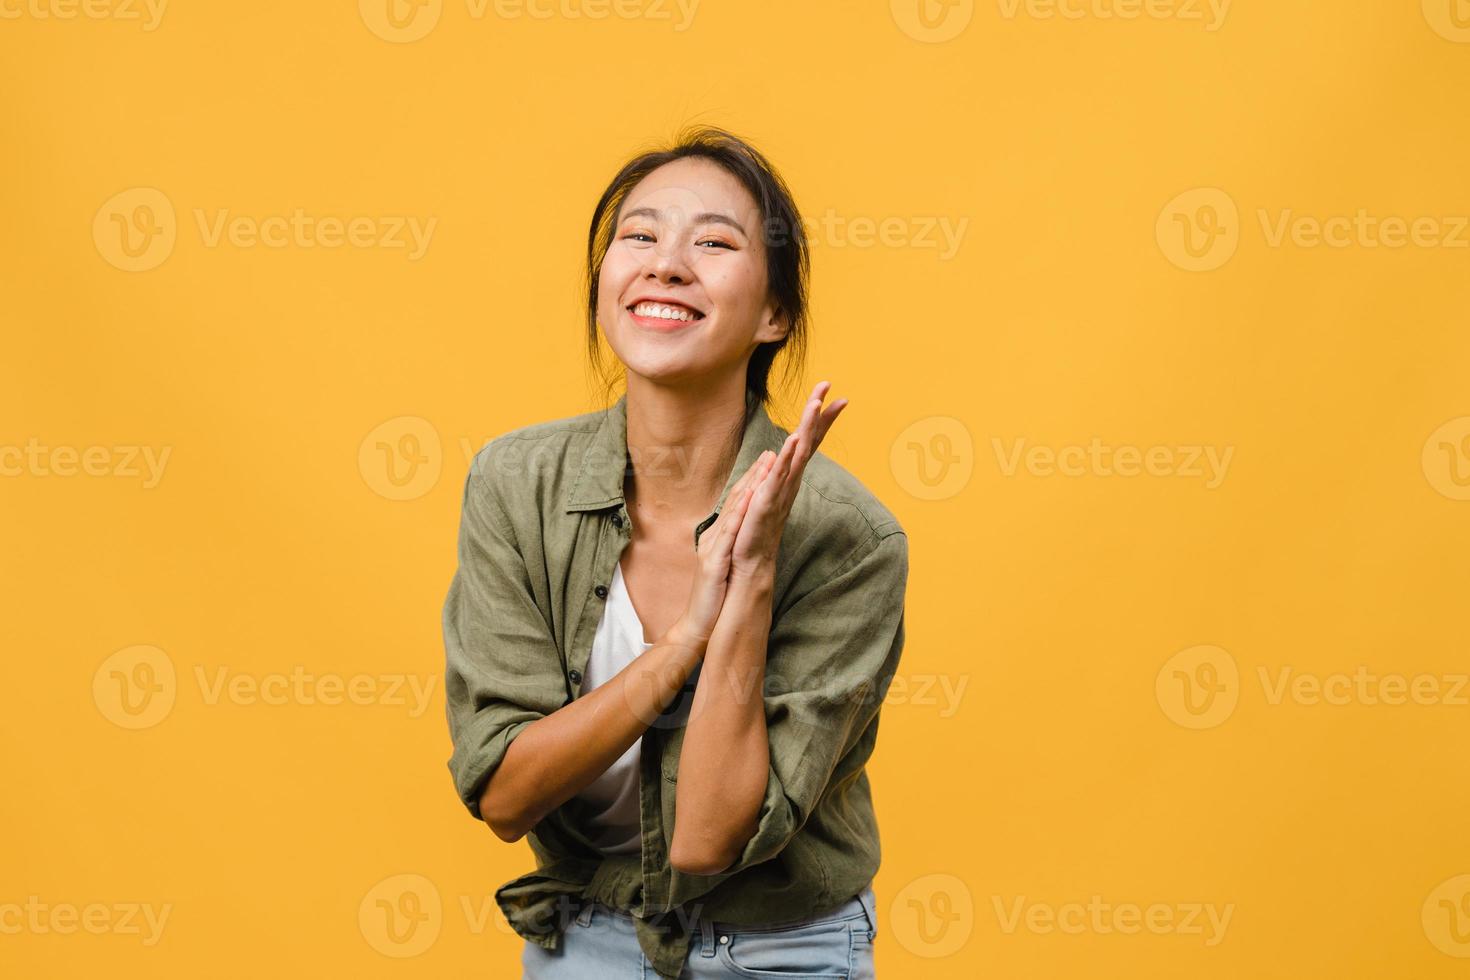 Jovencita asiática con expresión positiva, sonrisa amplia, vestida con ropa casual y mirando a cámara sobre fondo amarillo. feliz adorable mujer alegre se regocija con el éxito. concepto de expresión facial. foto